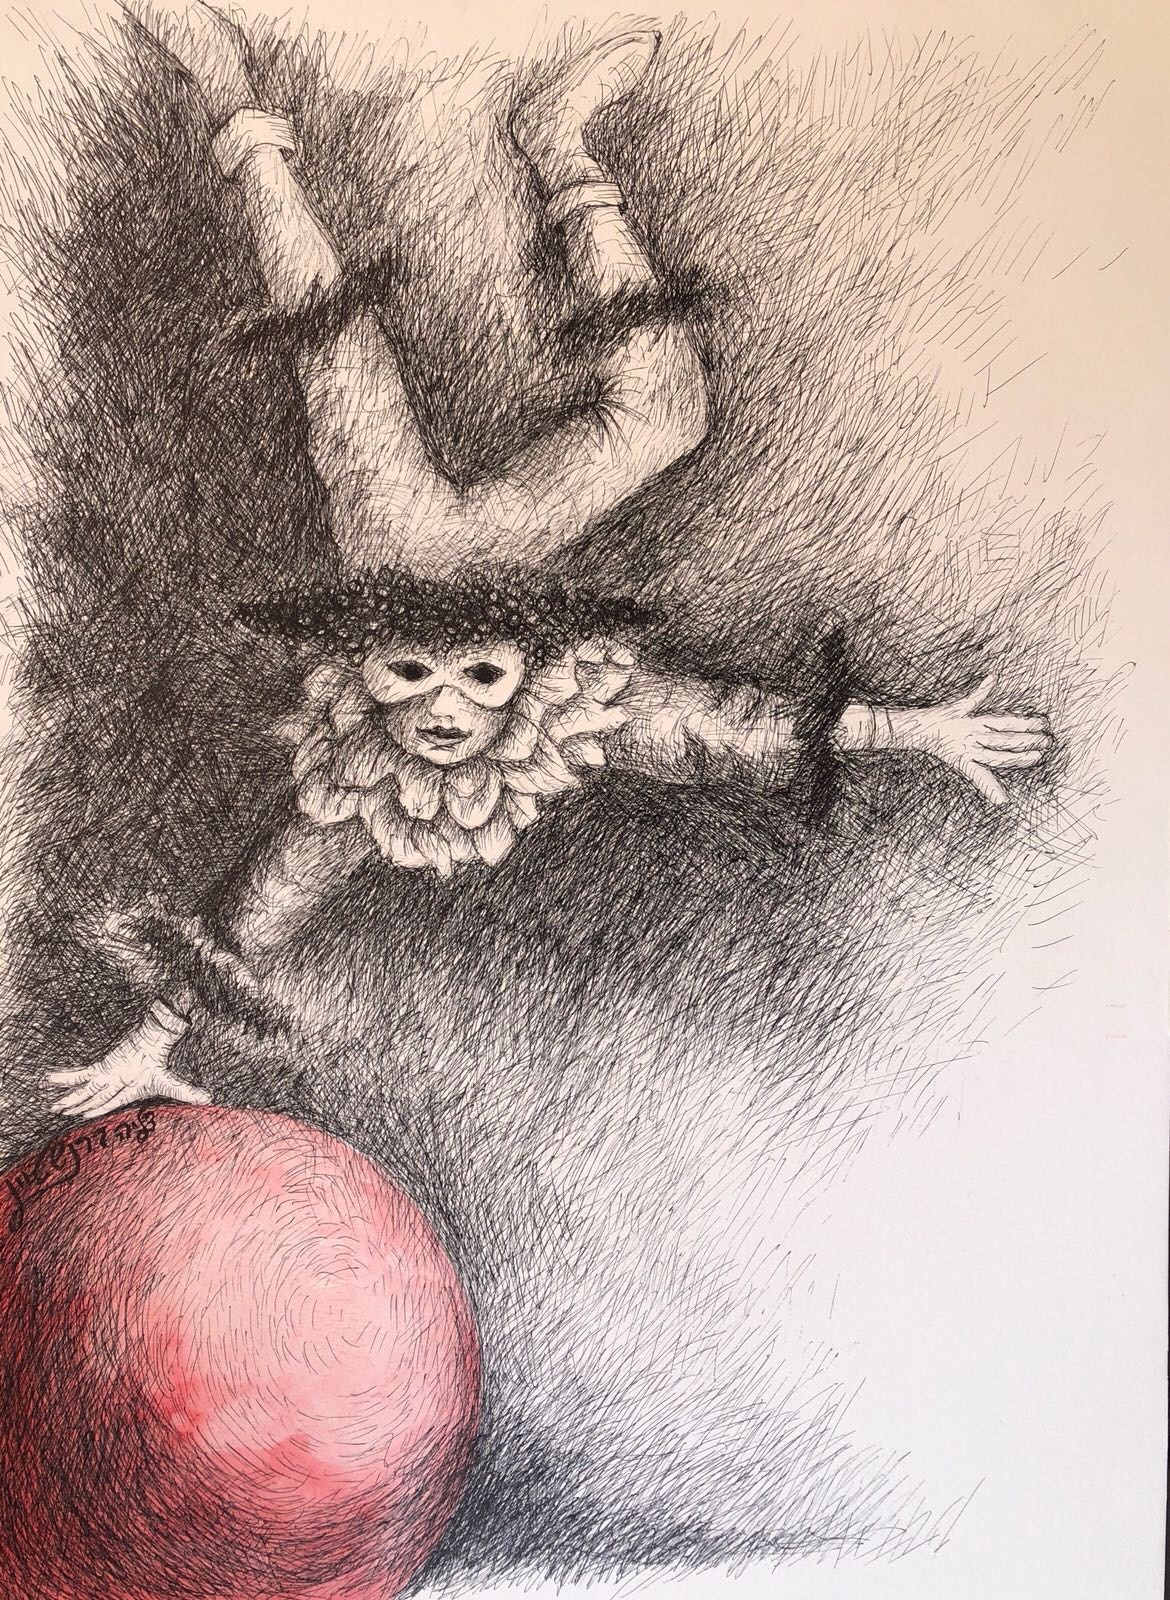 "בין העולמות", תערוכת יחיד של האמנית דליה ברנשטיין, תיפתח במוצ"ש הקרוב, 20.10.18 בבית אמני רעננה "מוזה" ובה מיטב יצירותיה